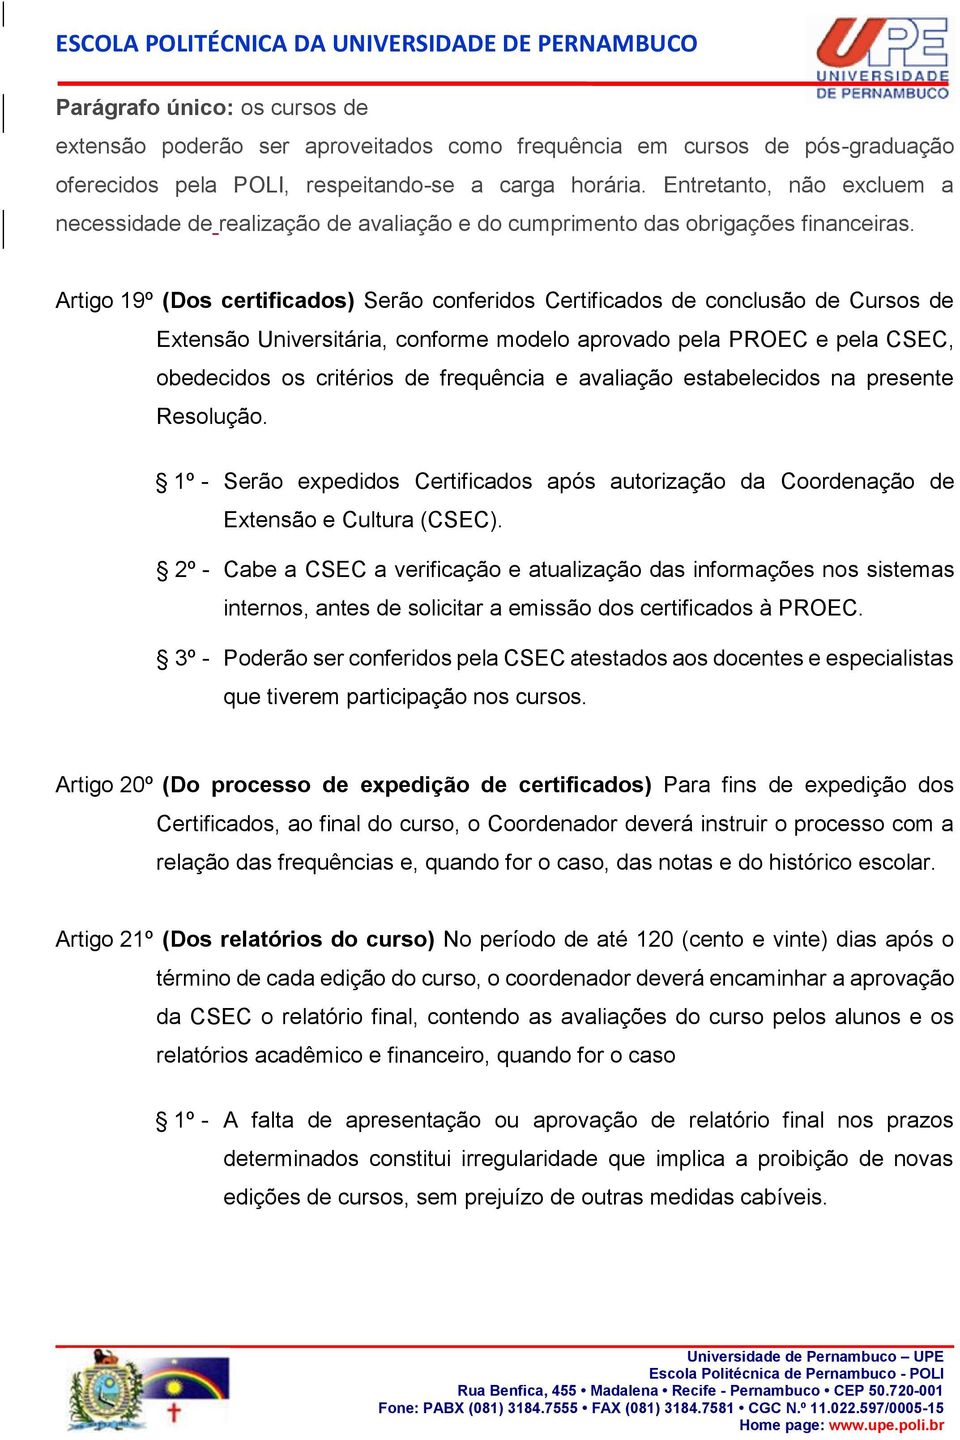 Artigo 19º (Dos certificados) Serão conferidos Certificados de conclusão de Cursos de Extensão Universitária, conforme modelo aprovado pela PROEC e pela CSEC, obedecidos os critérios de frequência e